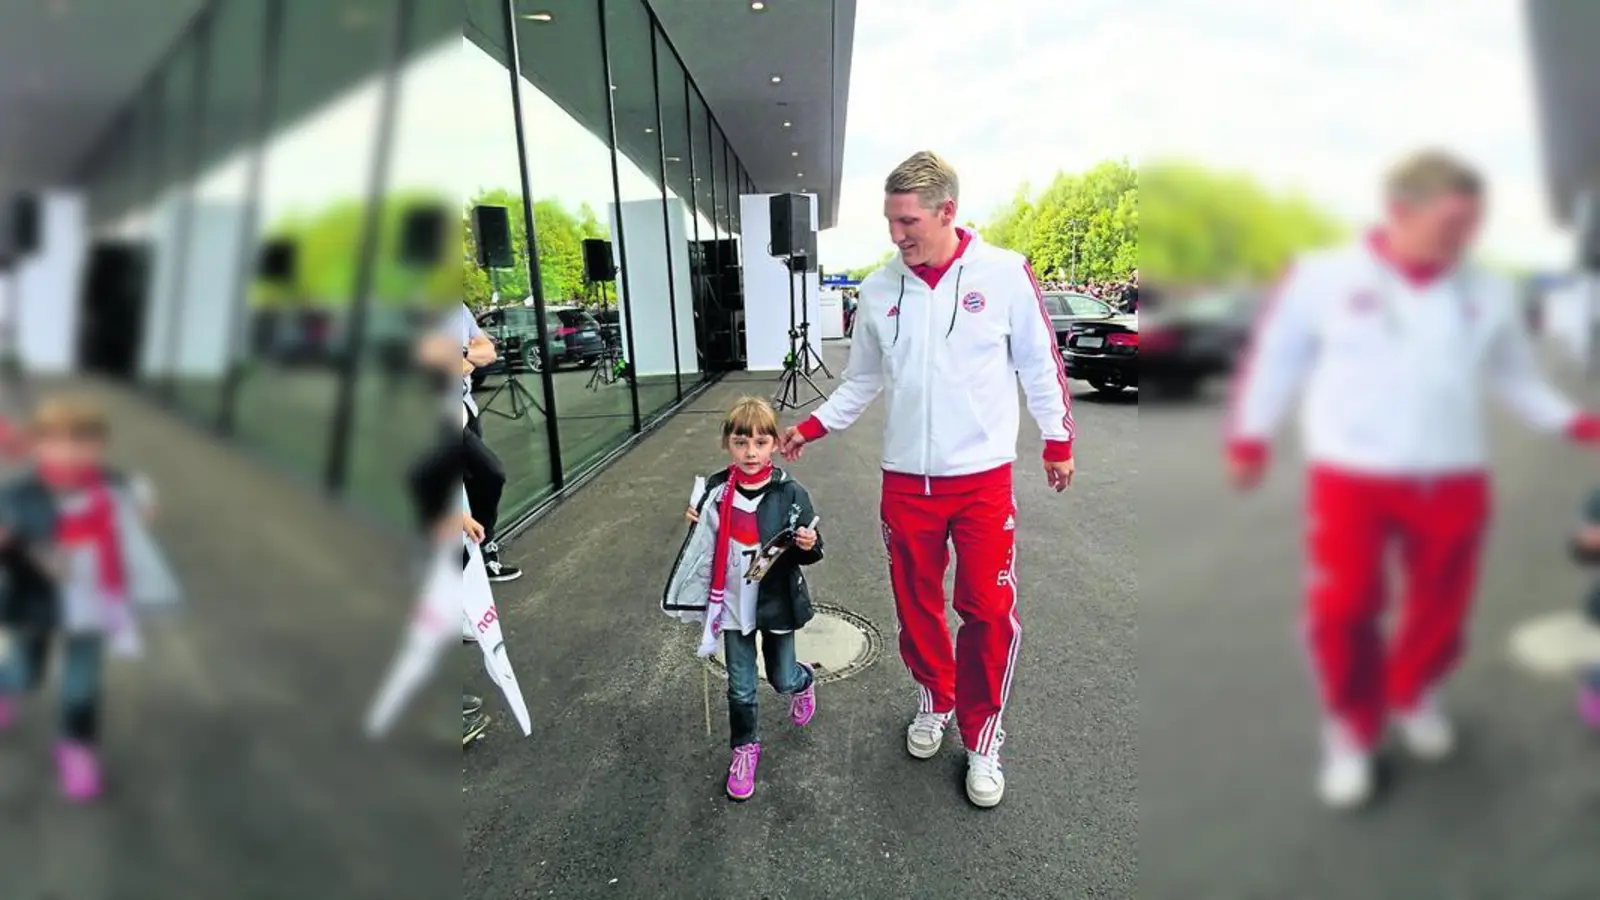 &lt;p&gt; &lt;x_bildunterschr&gt; &lt;b&gt;Die sechsjährige Jenny Grünwald  &lt;/b&gt;aus Schiltberg hatte am vergangenen Samstag in Neuburg ein tolles Erlebnis. Die FC-Bayern-Stars Bastian Schweinsteiger und Thomas Müller kümmerten sich im Rahmen der Dienstwagenübergabe von Audi rührend um die kleine Jenny.     Foto: privat &lt;/x_bildunterschr&gt; &lt;/p&gt;